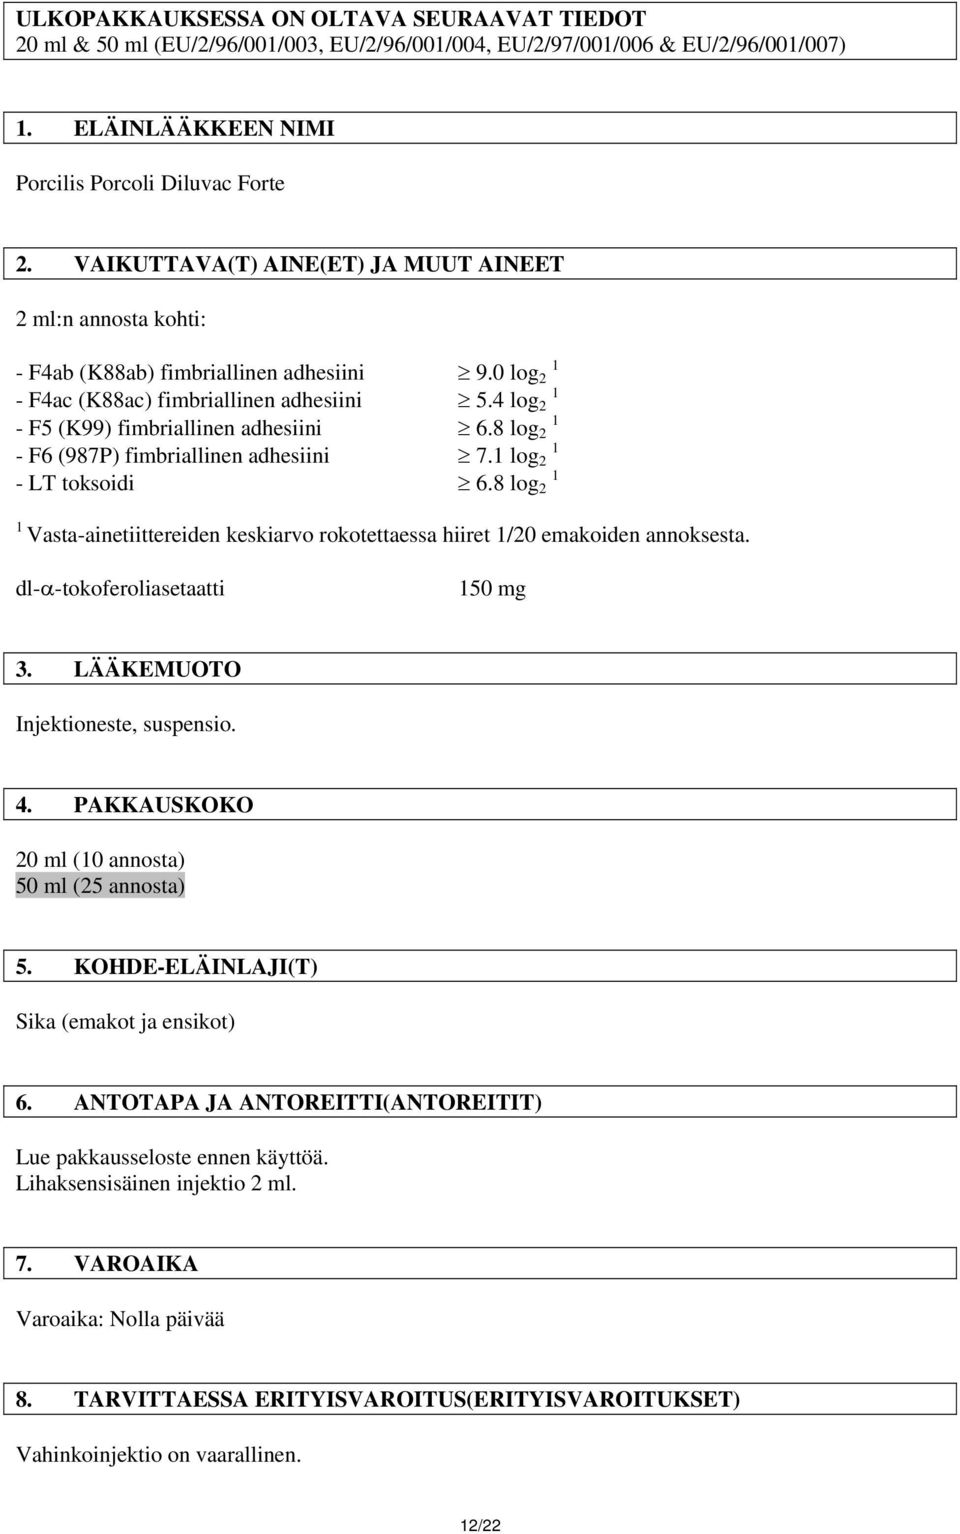 8 log 1 - F6 (987P) fimbriallinen adhesiini 7.1 log 1 - LT toksoidi 6.8 log 1 1 Vasta-ainetiittereiden keskiarvo rokotettaessa hiiret 1/0 emakoiden annoksesta. dl-α-tokoferoliasetaatti 150 mg 3.